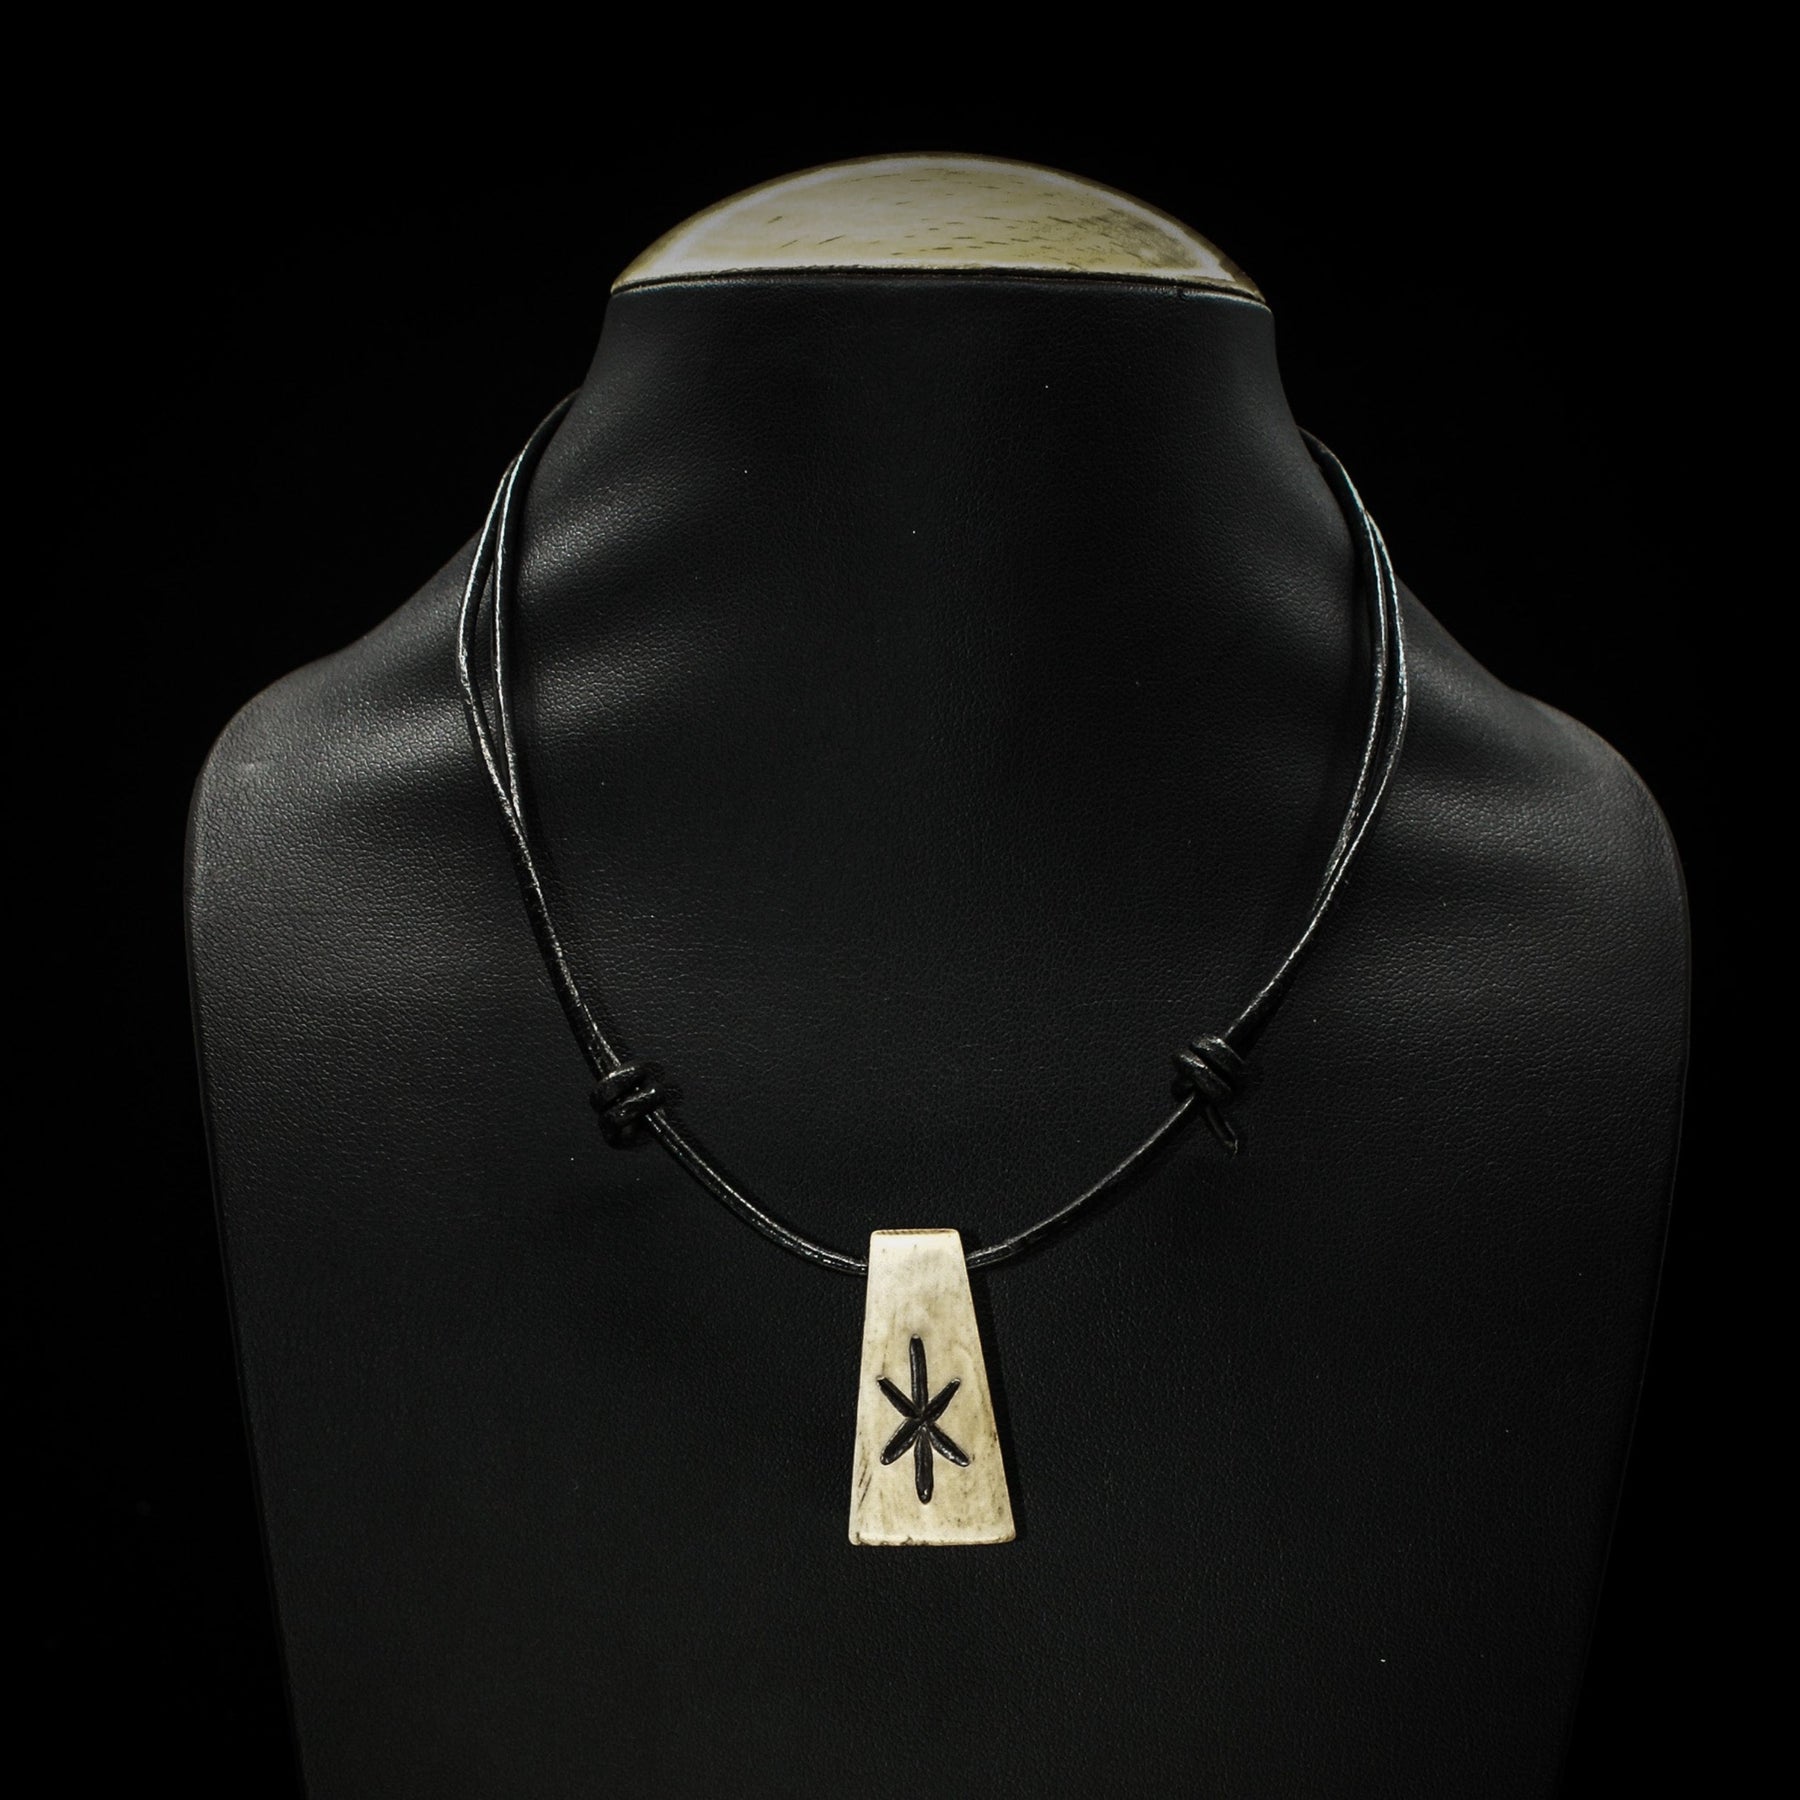 Nordic rune pendant in bone